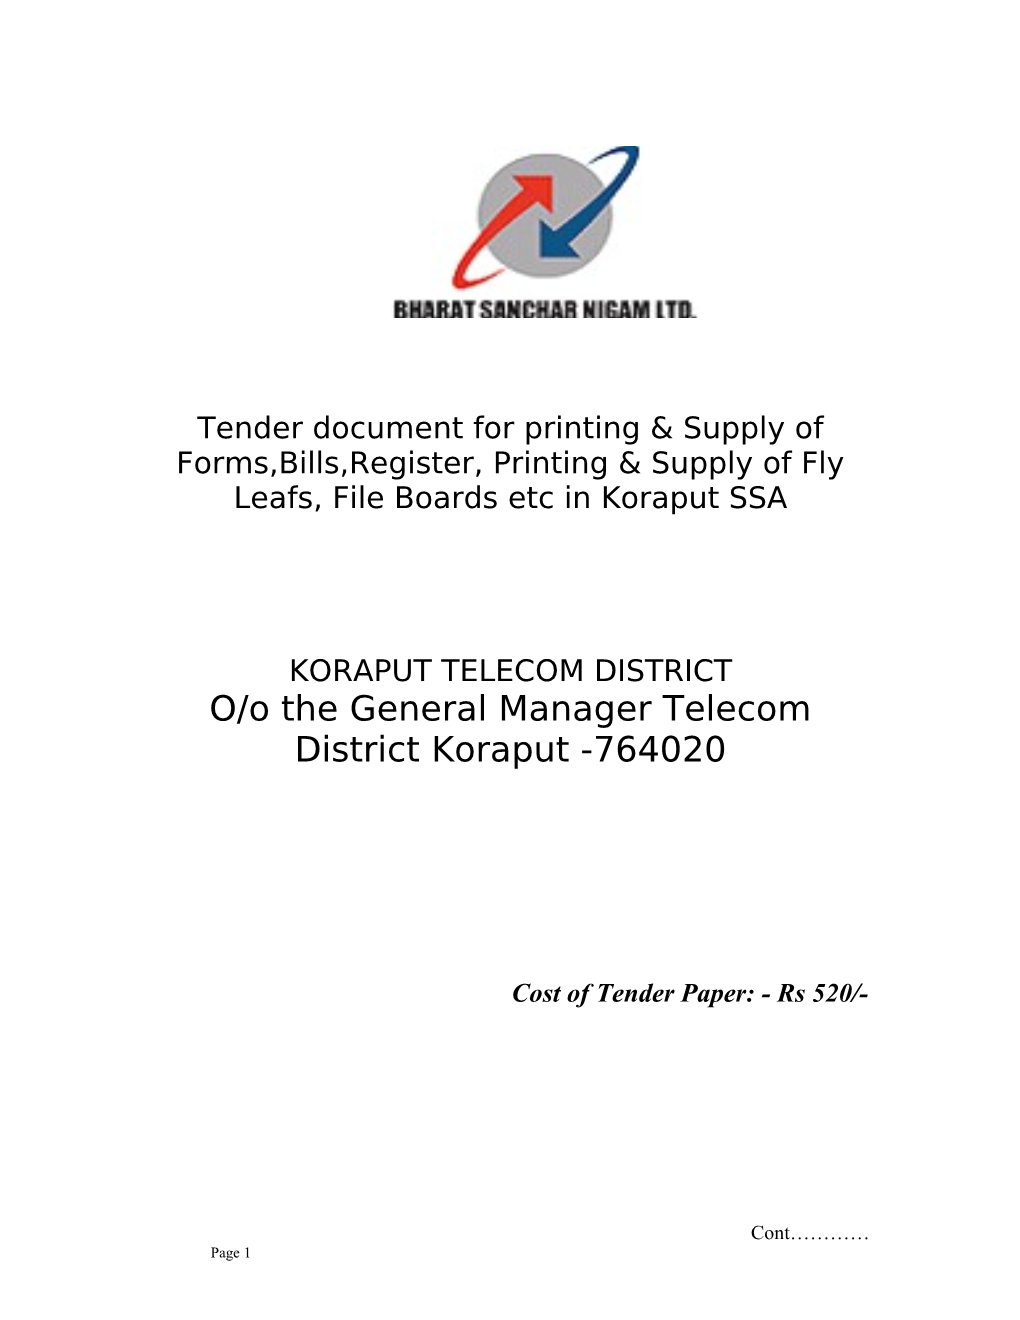 O/O the General Manager Telecom District Koraput -764020